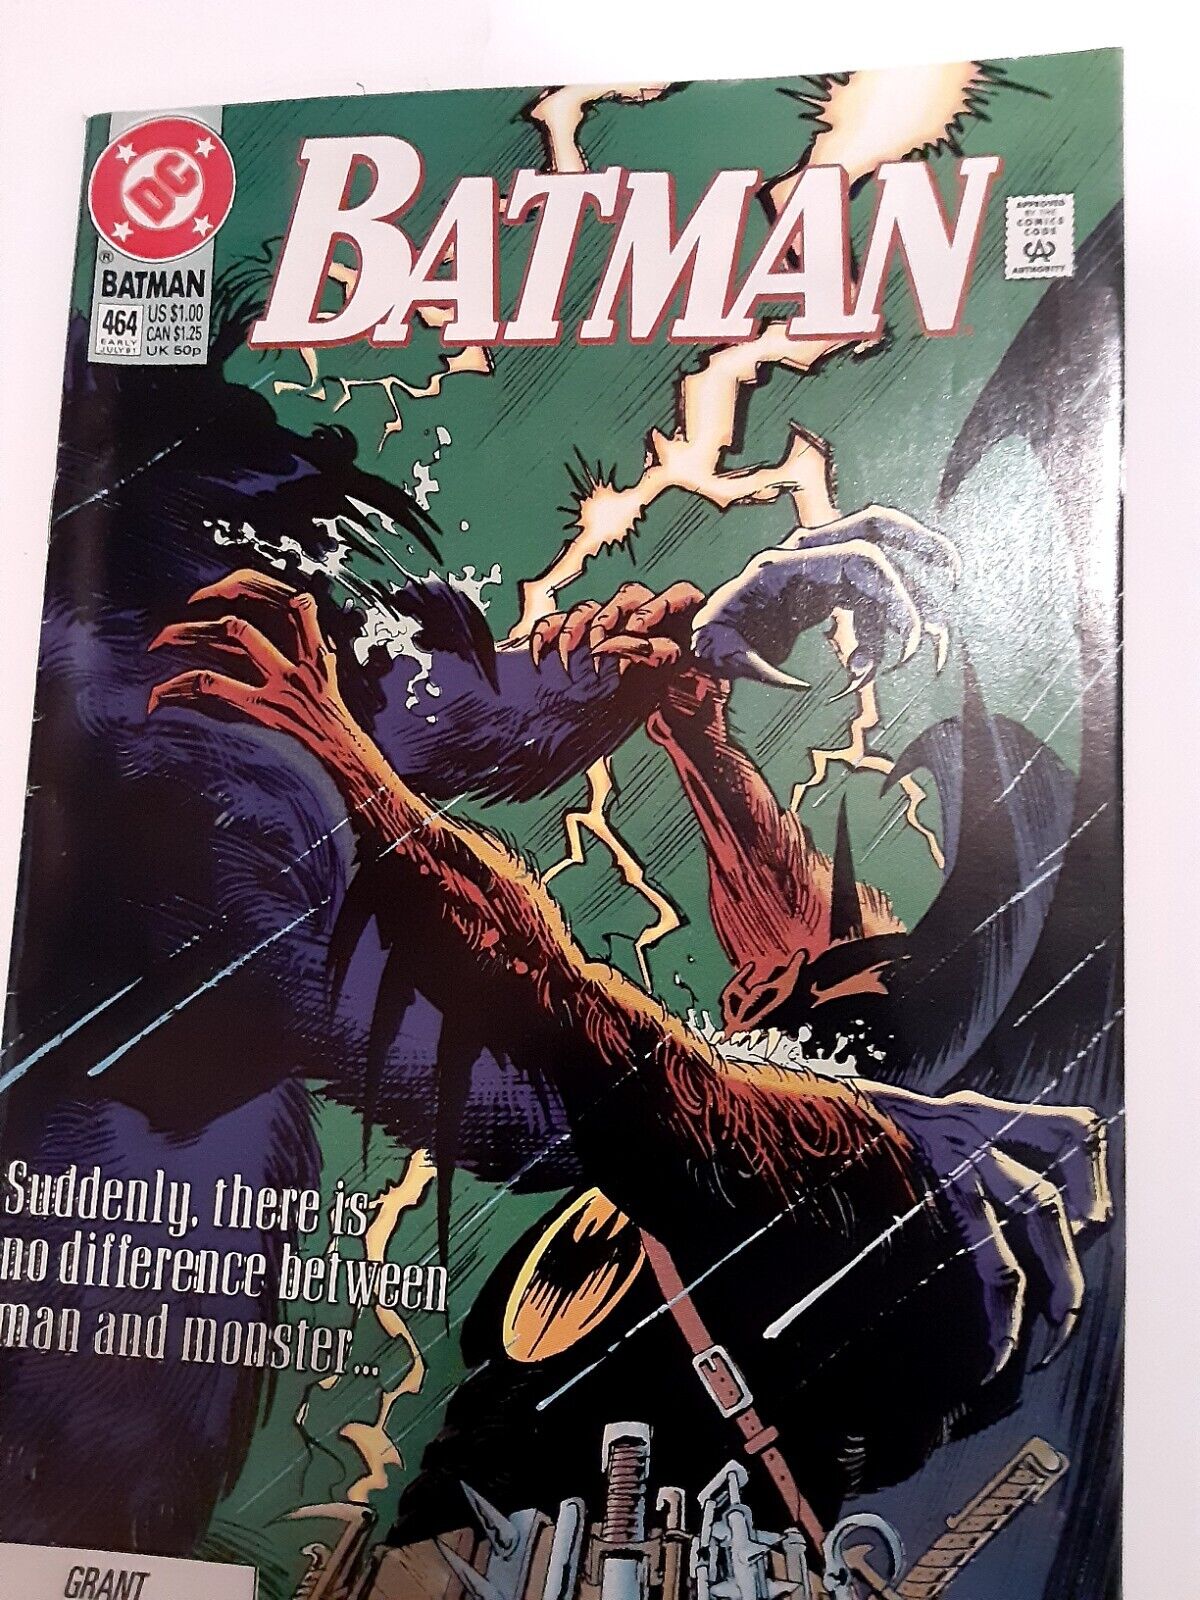 Batman #464 (DC Comics, Early July 1991)